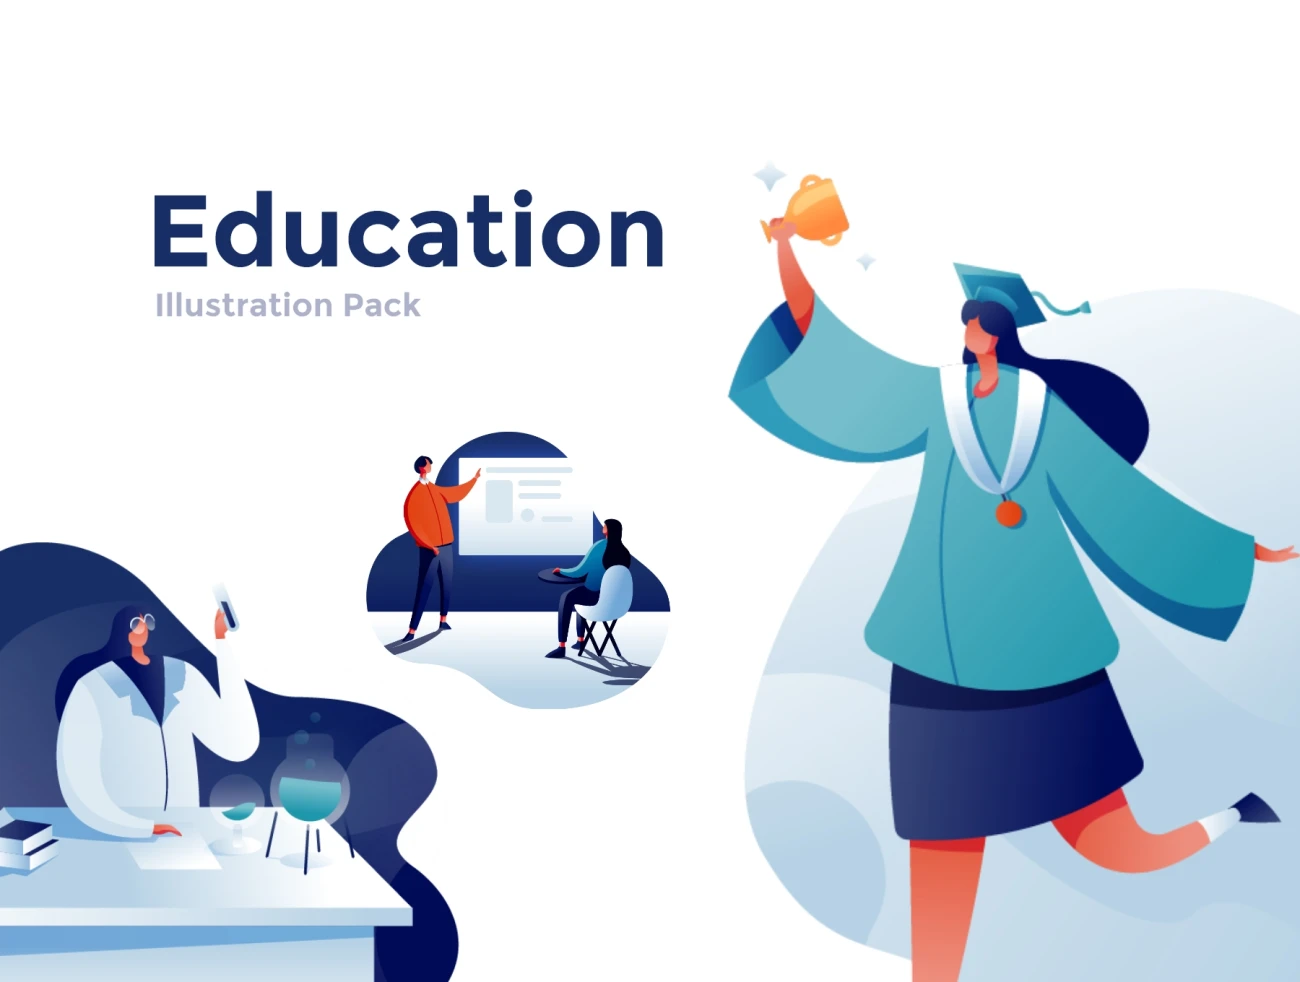 Education Illustration Pack 特色教育插图包-UI/UX、人物插画、人物模特、场景插画、学习生活、插画、教育医疗-到位啦UI